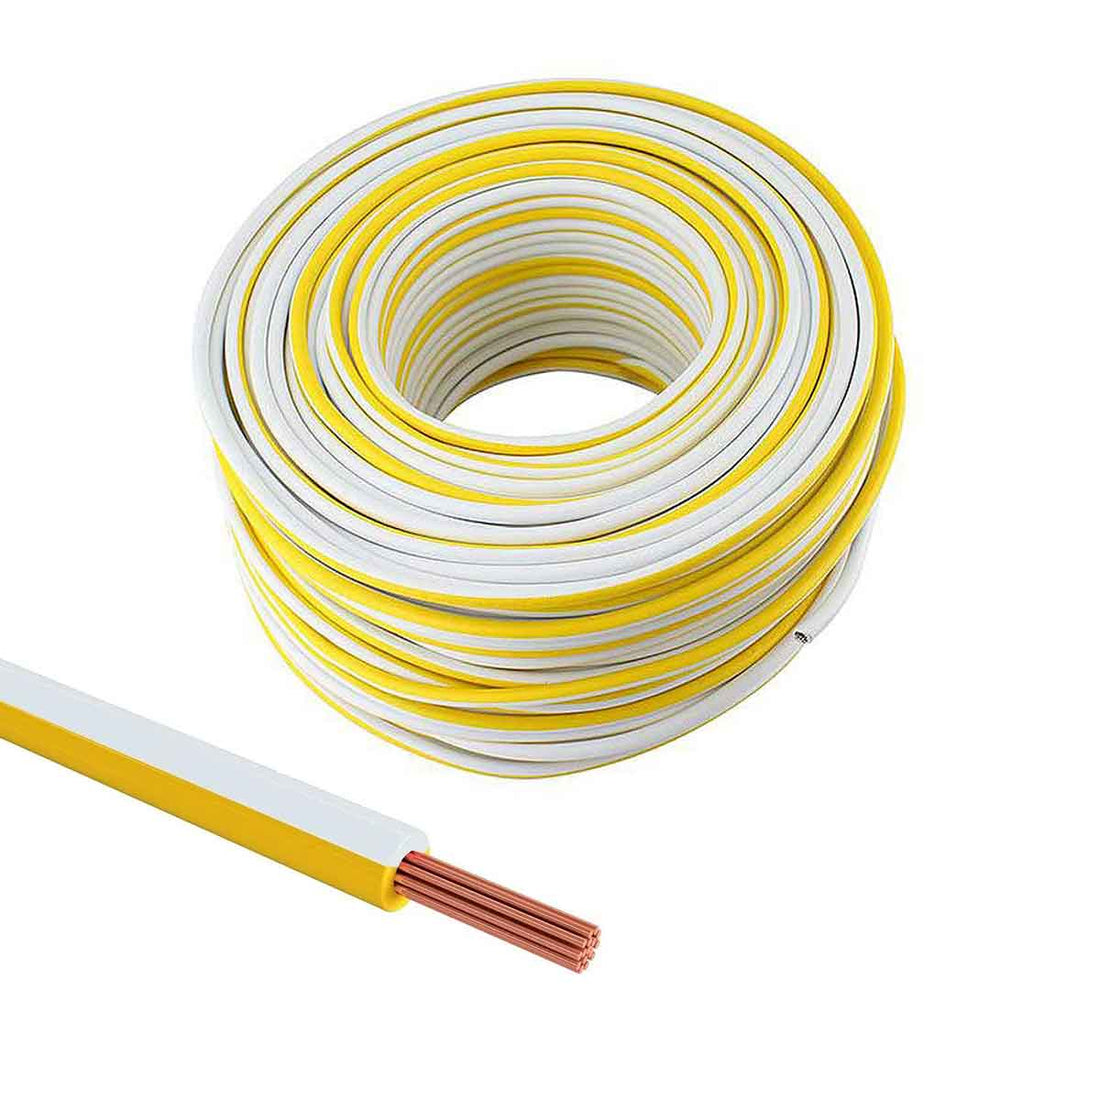 rollo de cable thw amarillo y blanco calibre 10 awg